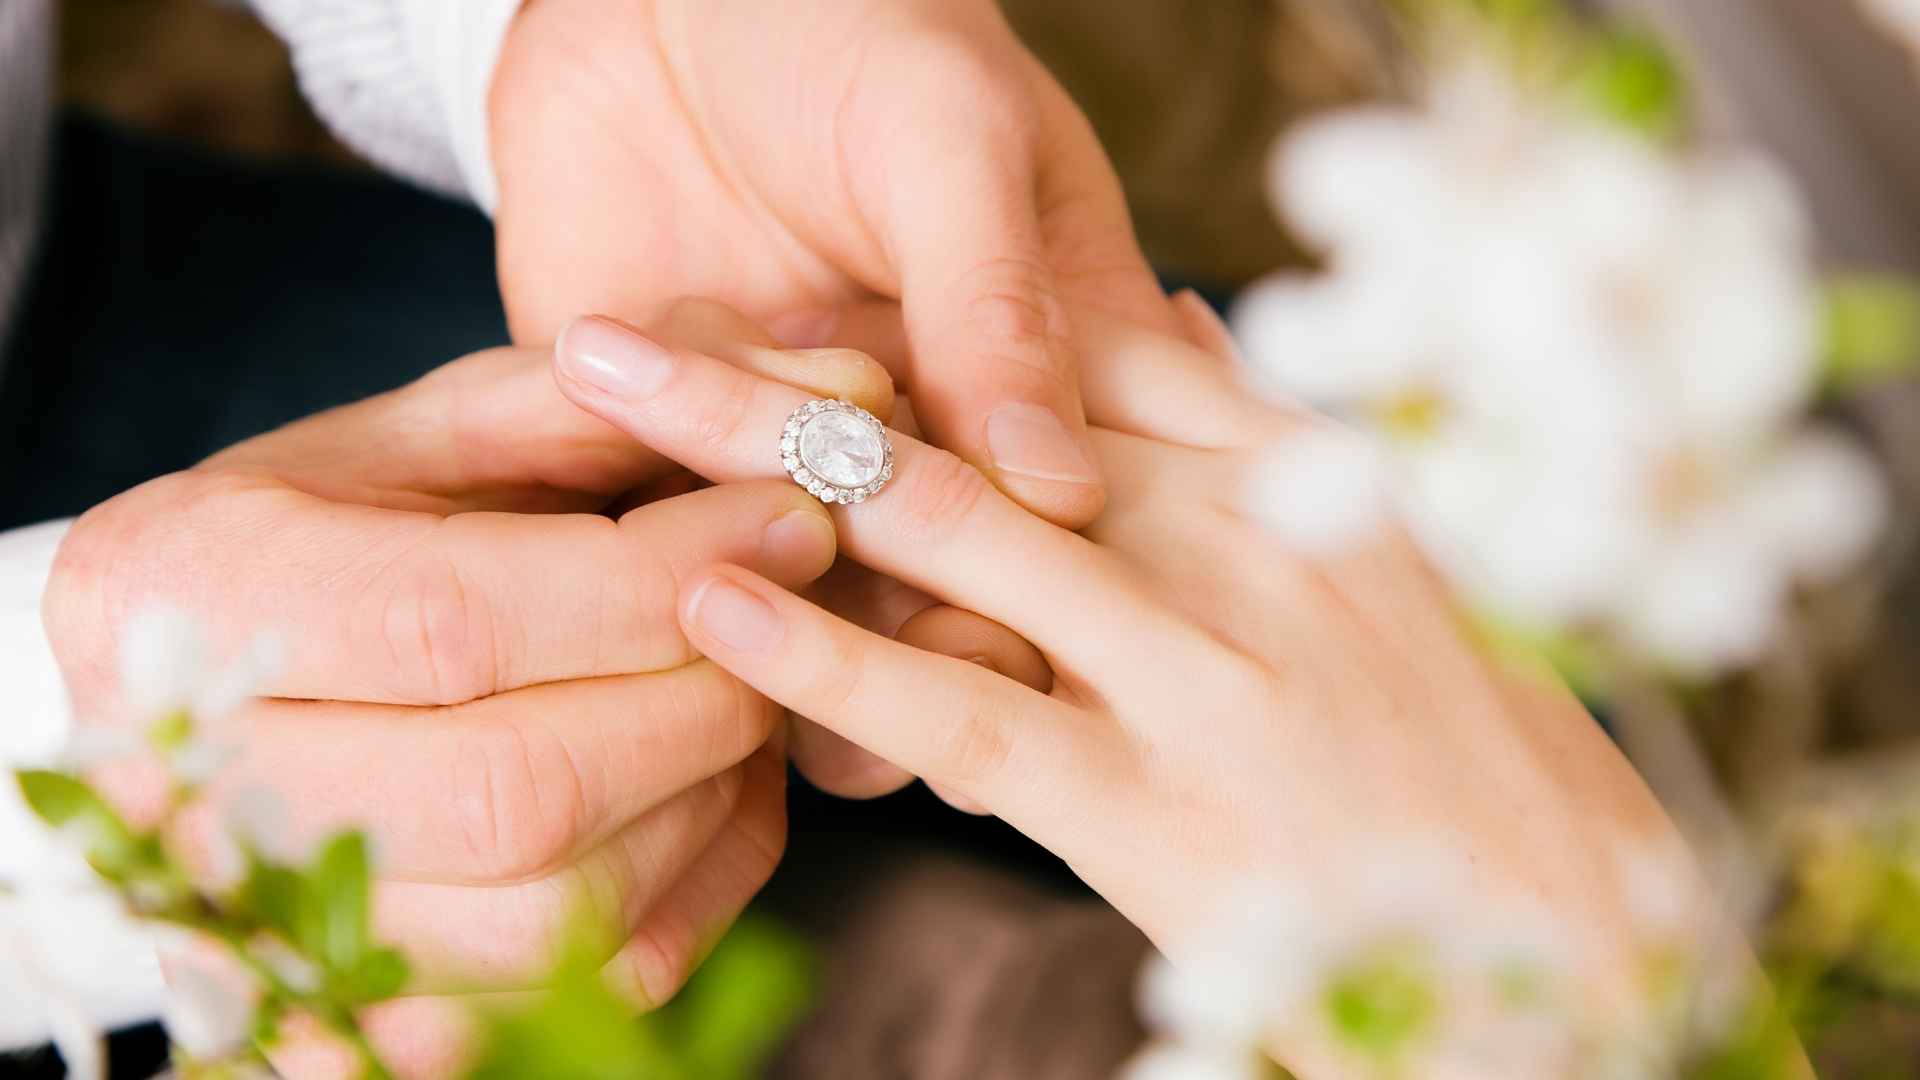 כיצד לבחור את טבעת האירוסין המושלמת